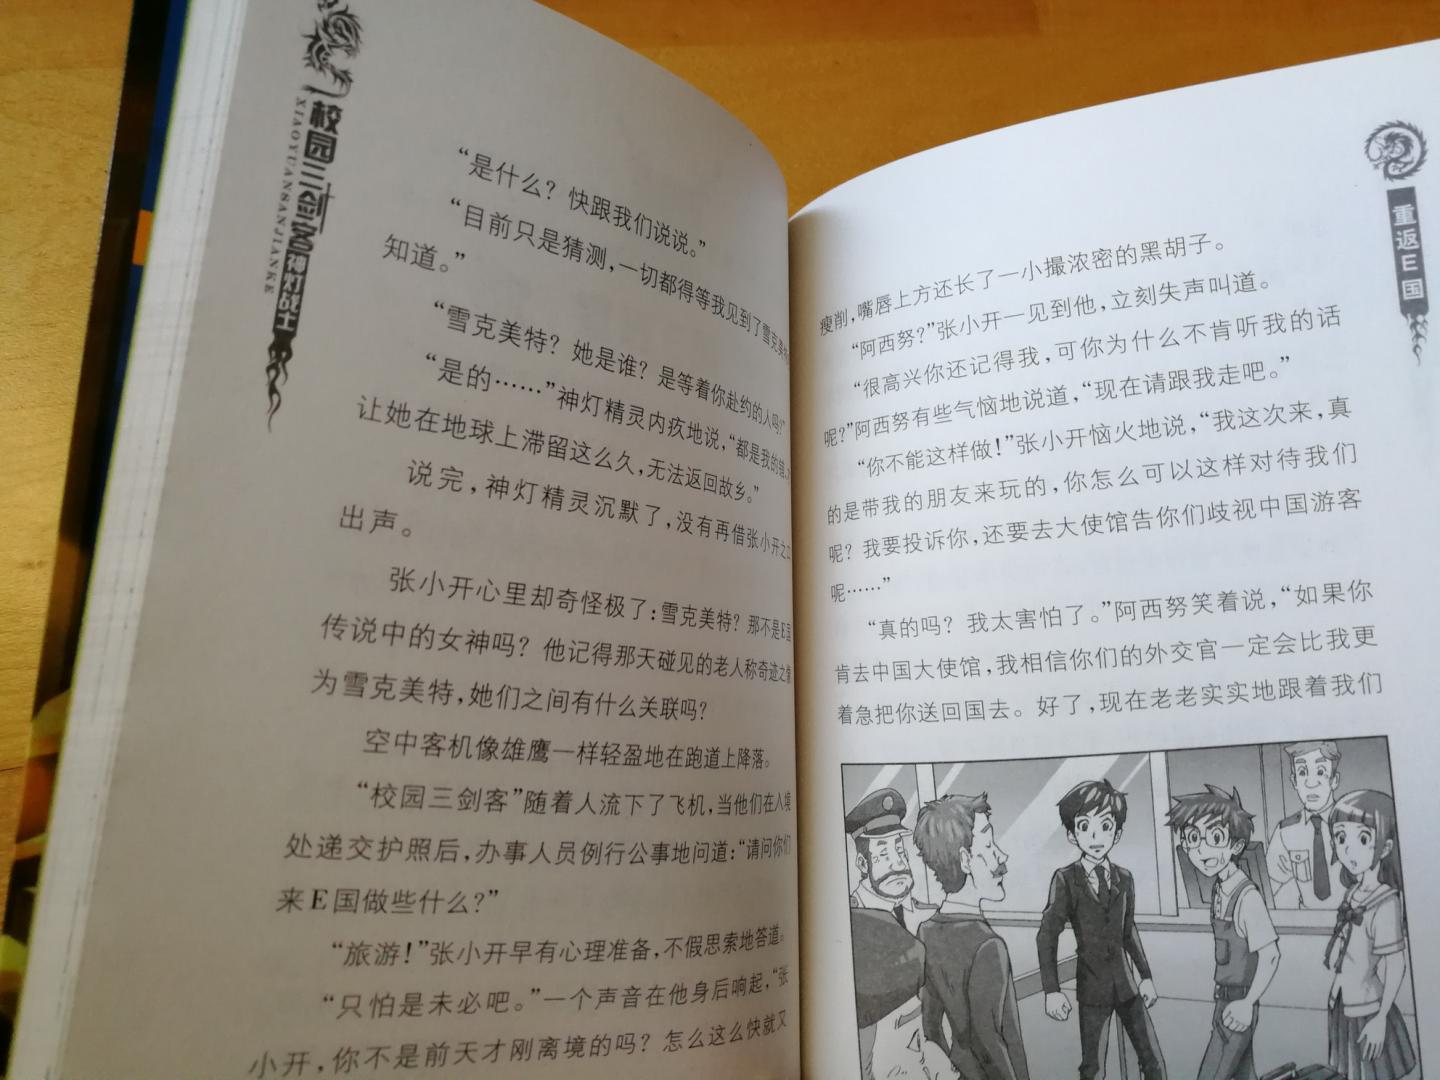 杨鹏是个高产作家，但一个系列经常由不同出版社出版，换个形式而已，有点乱。